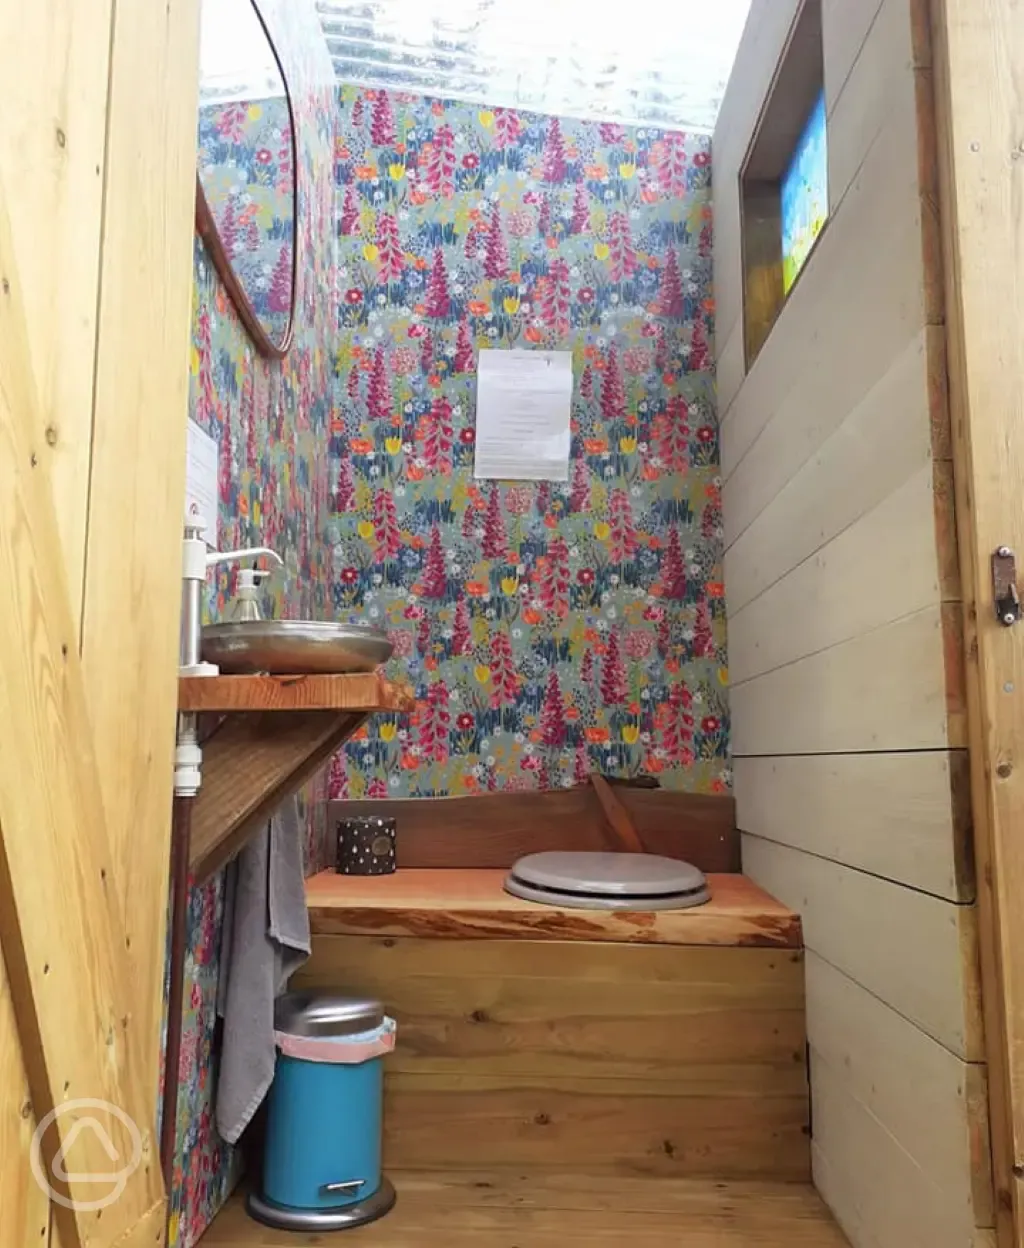 Camp toilet